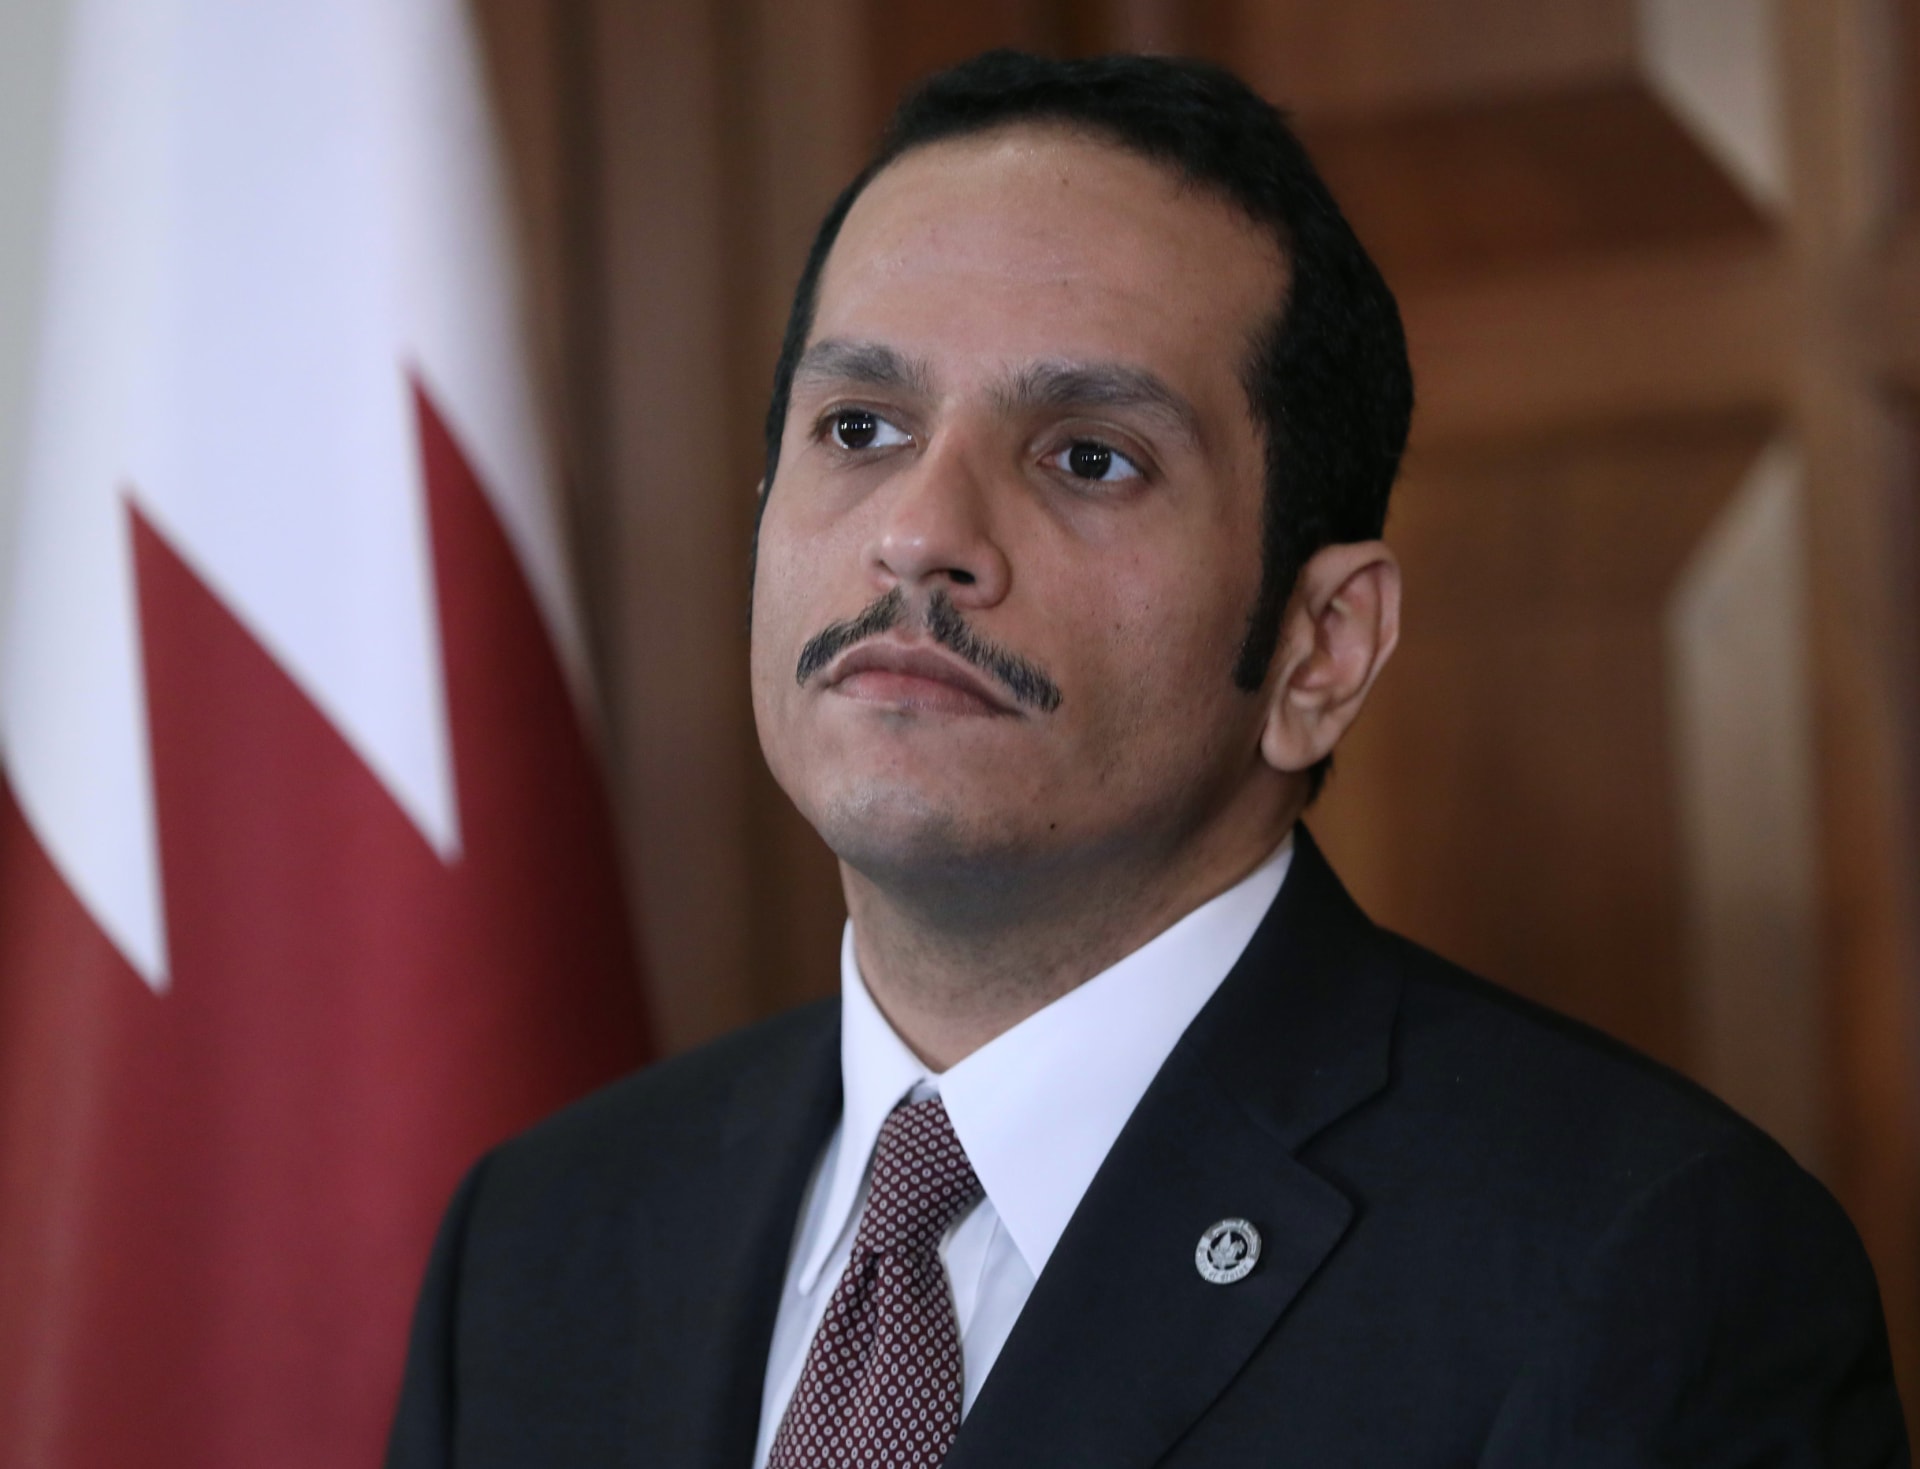 وزير خارجية قطر: إعادة بناء الثقة بين دول مجلس التعاون ستتطلب وقتاً طويلاً